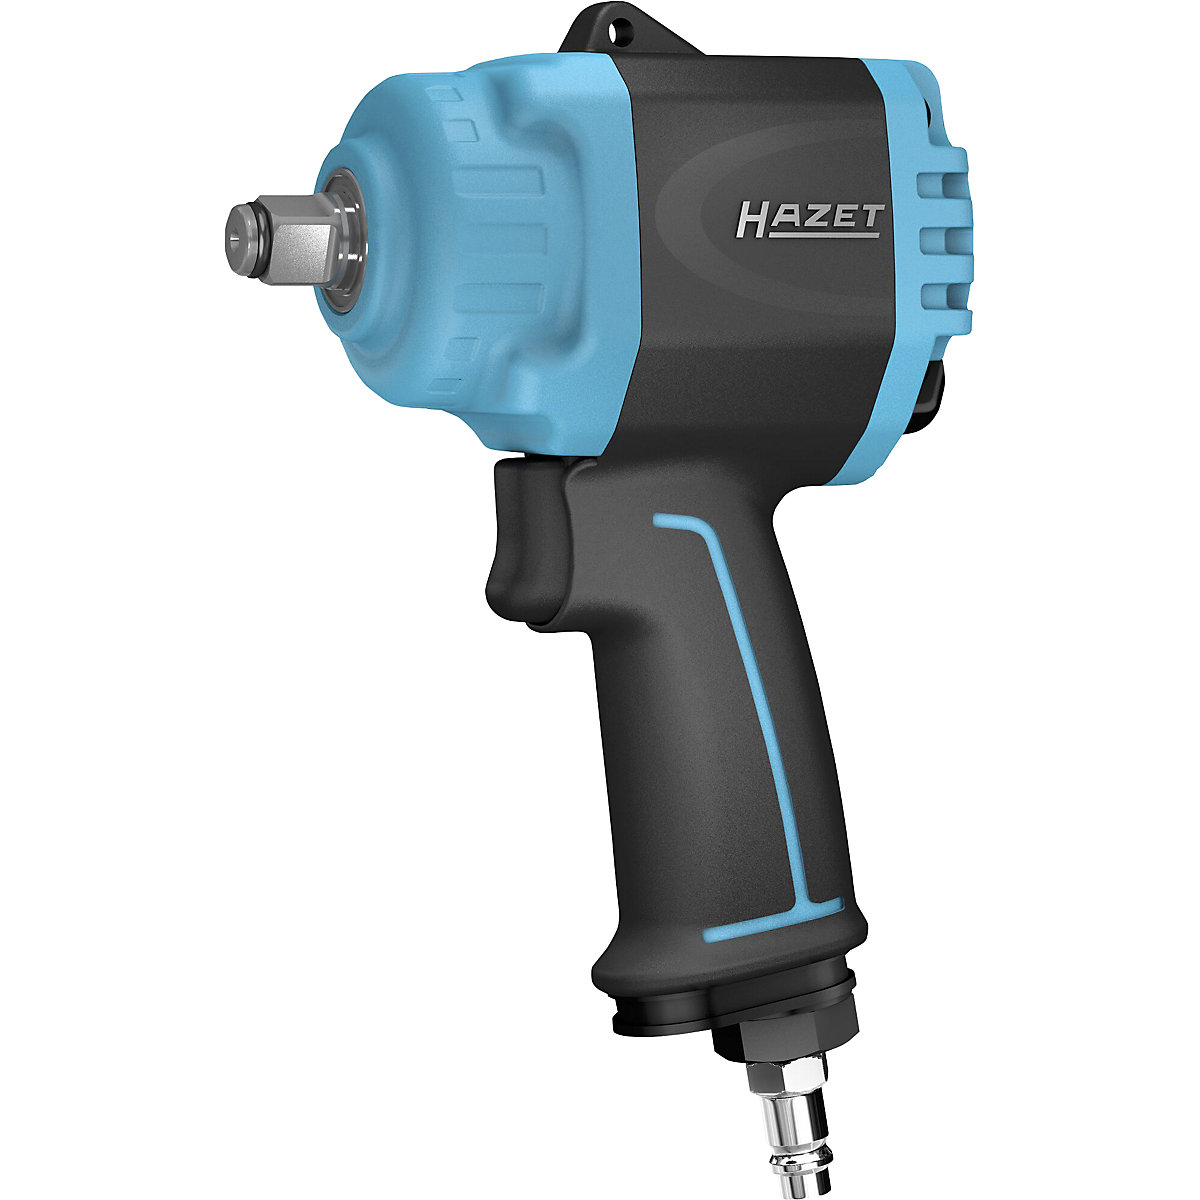 HAZET – Avvitatore a impulsi turbo MINI TWIN extra corto, pressione di esercizio max 6,3 bar, coppia di allentamento massimo 1600 Nm